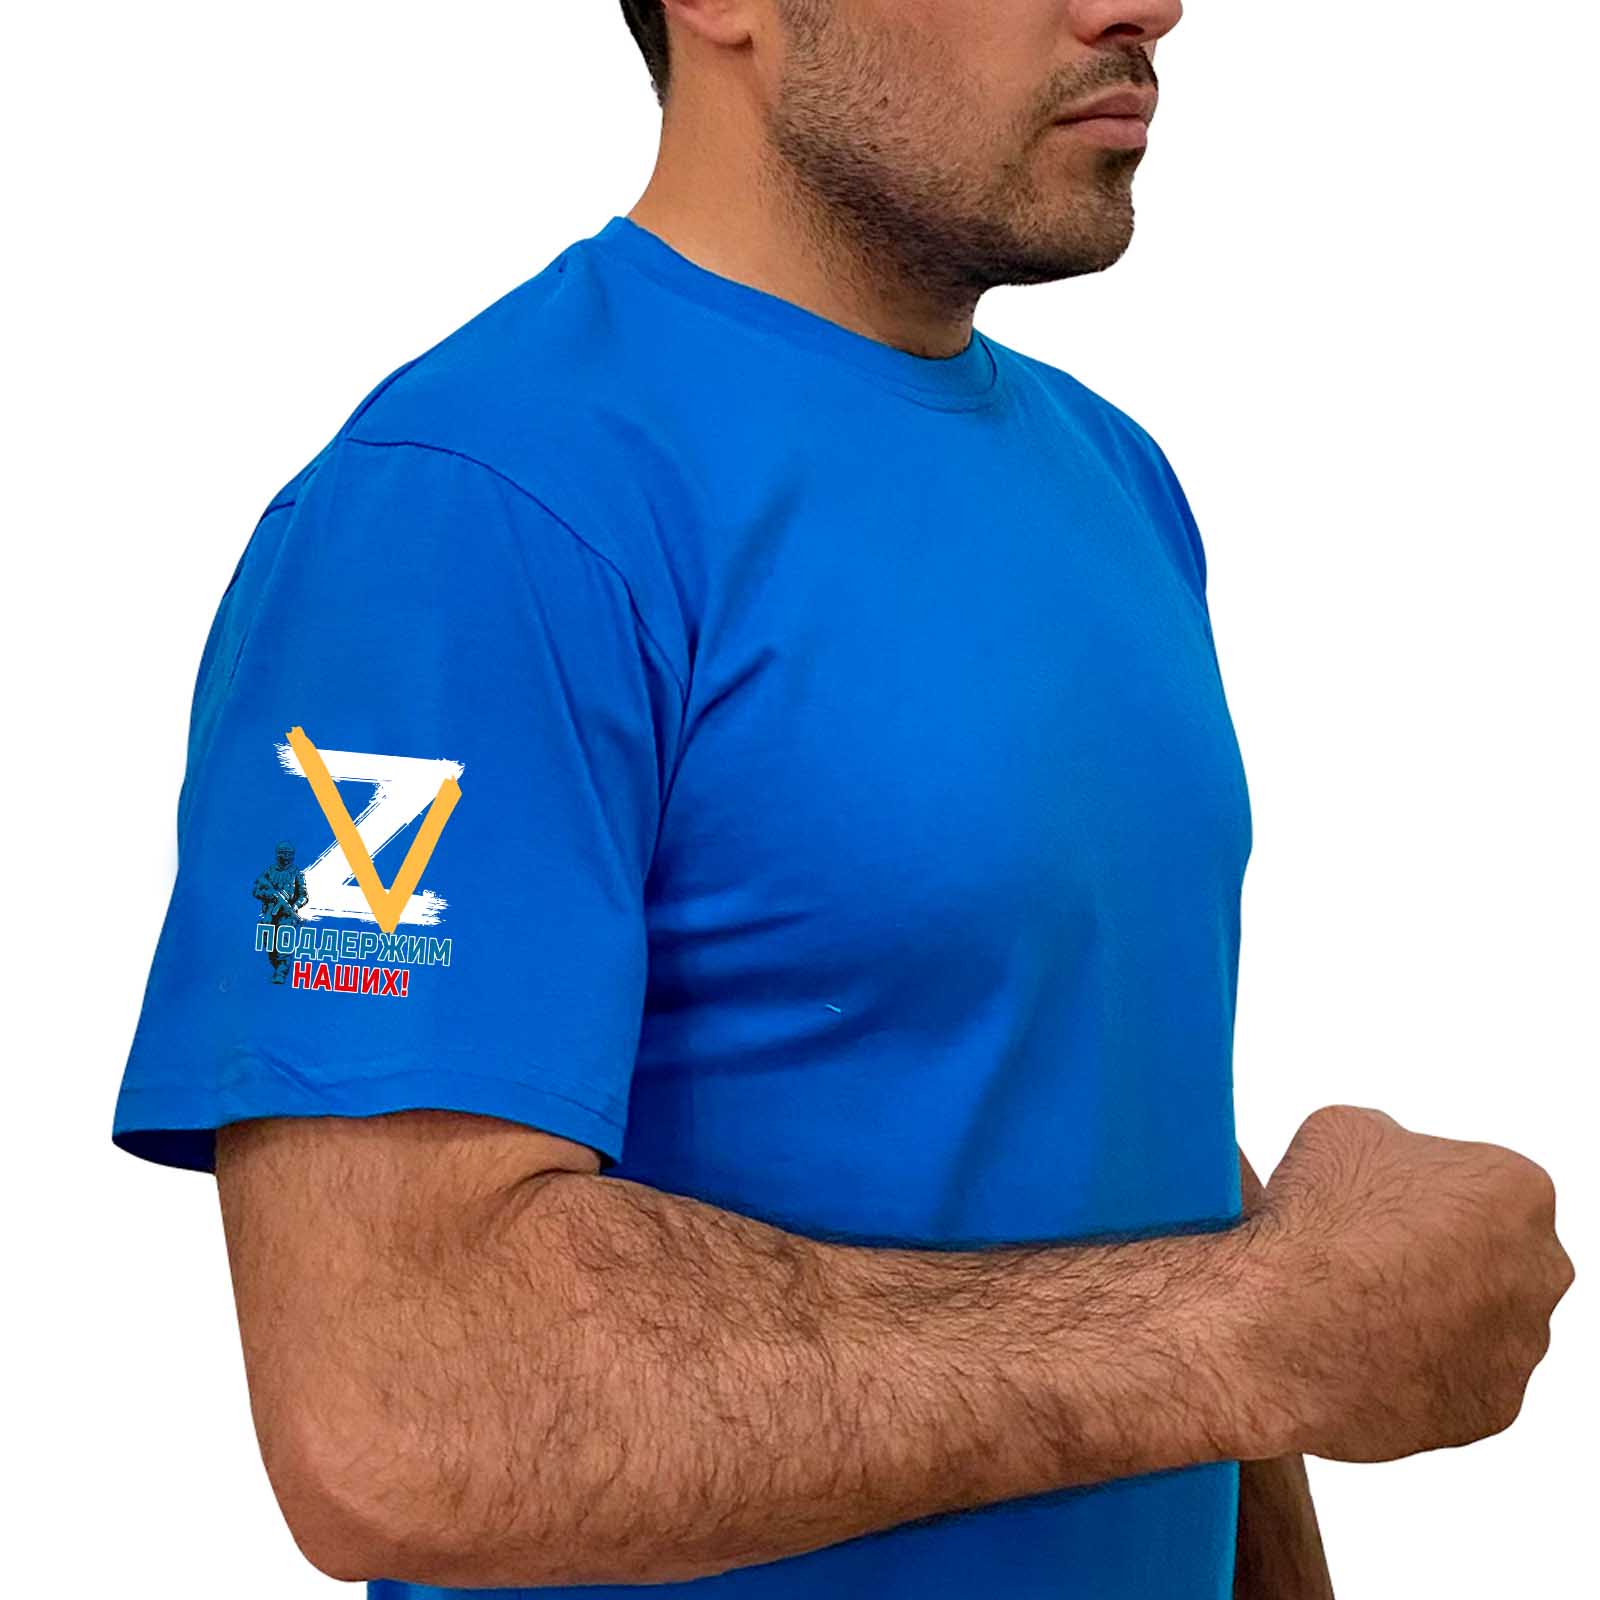 Купить удобную хлопковую футболку Z V с доставкой в ваш город